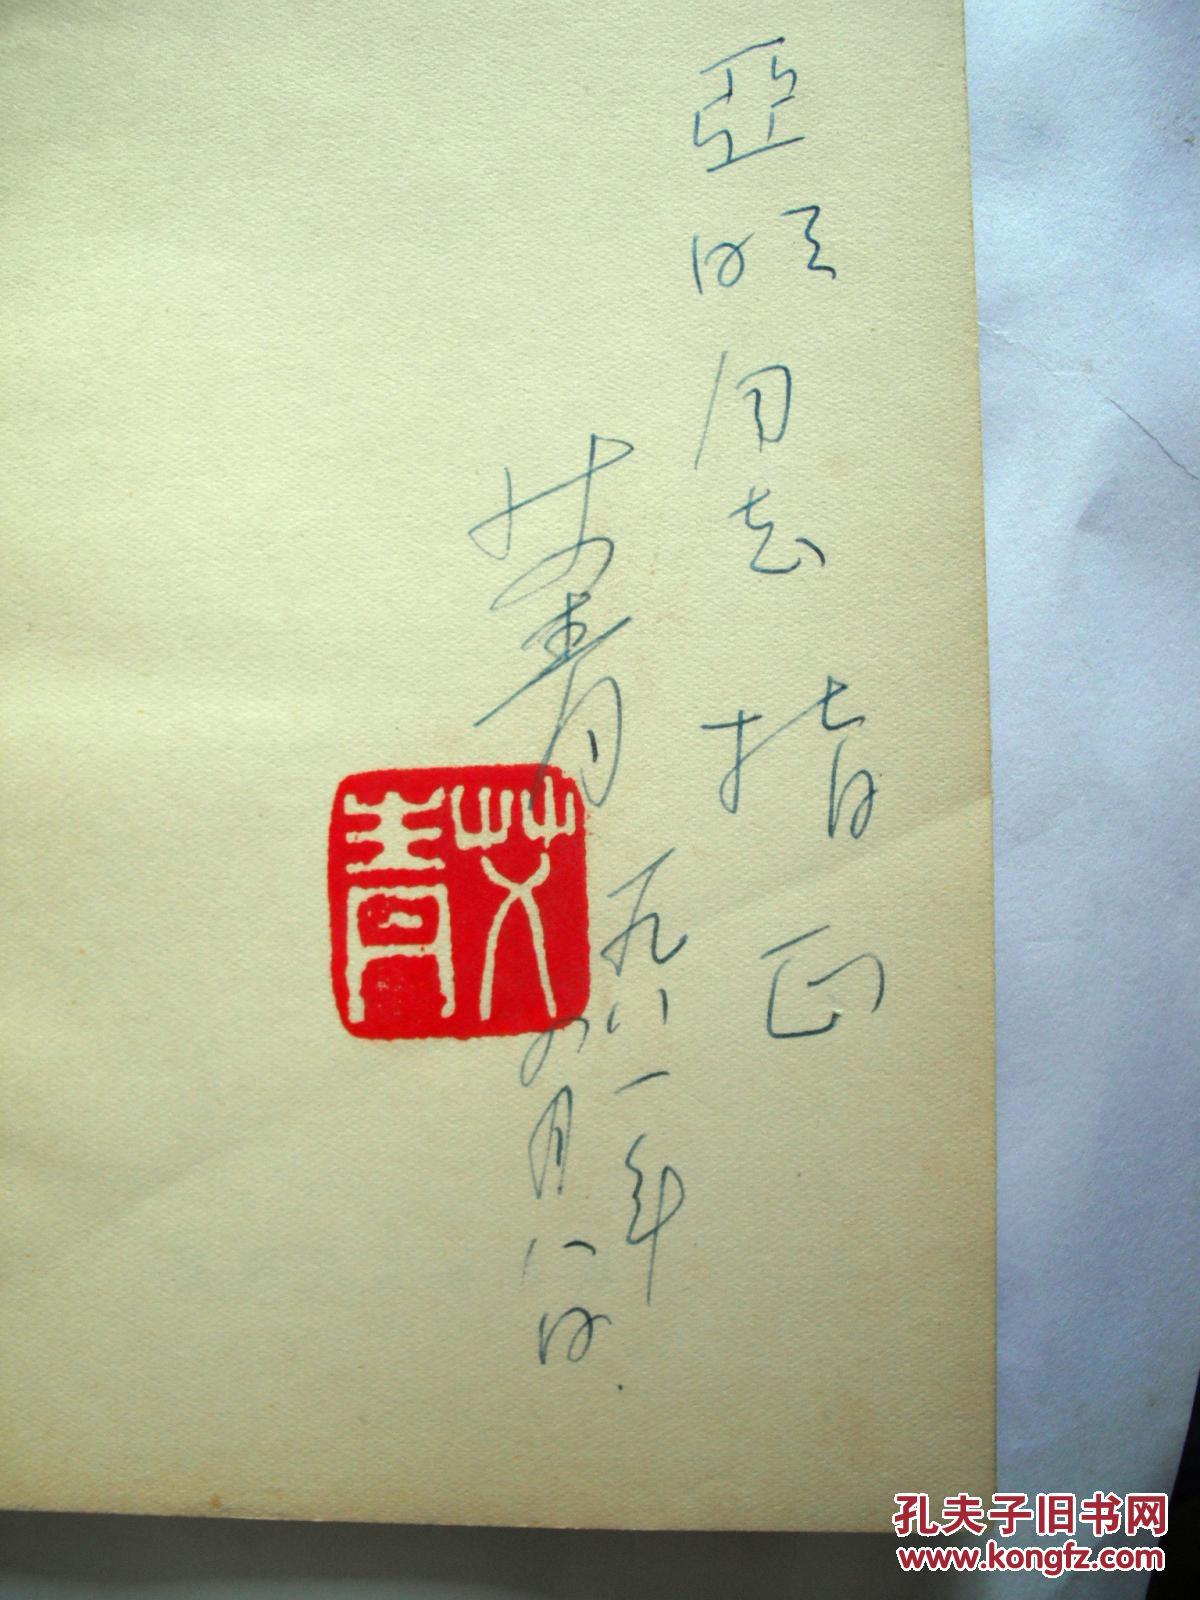 【图】老诗人艾青钤印签赠亚明本《彩色的诗》